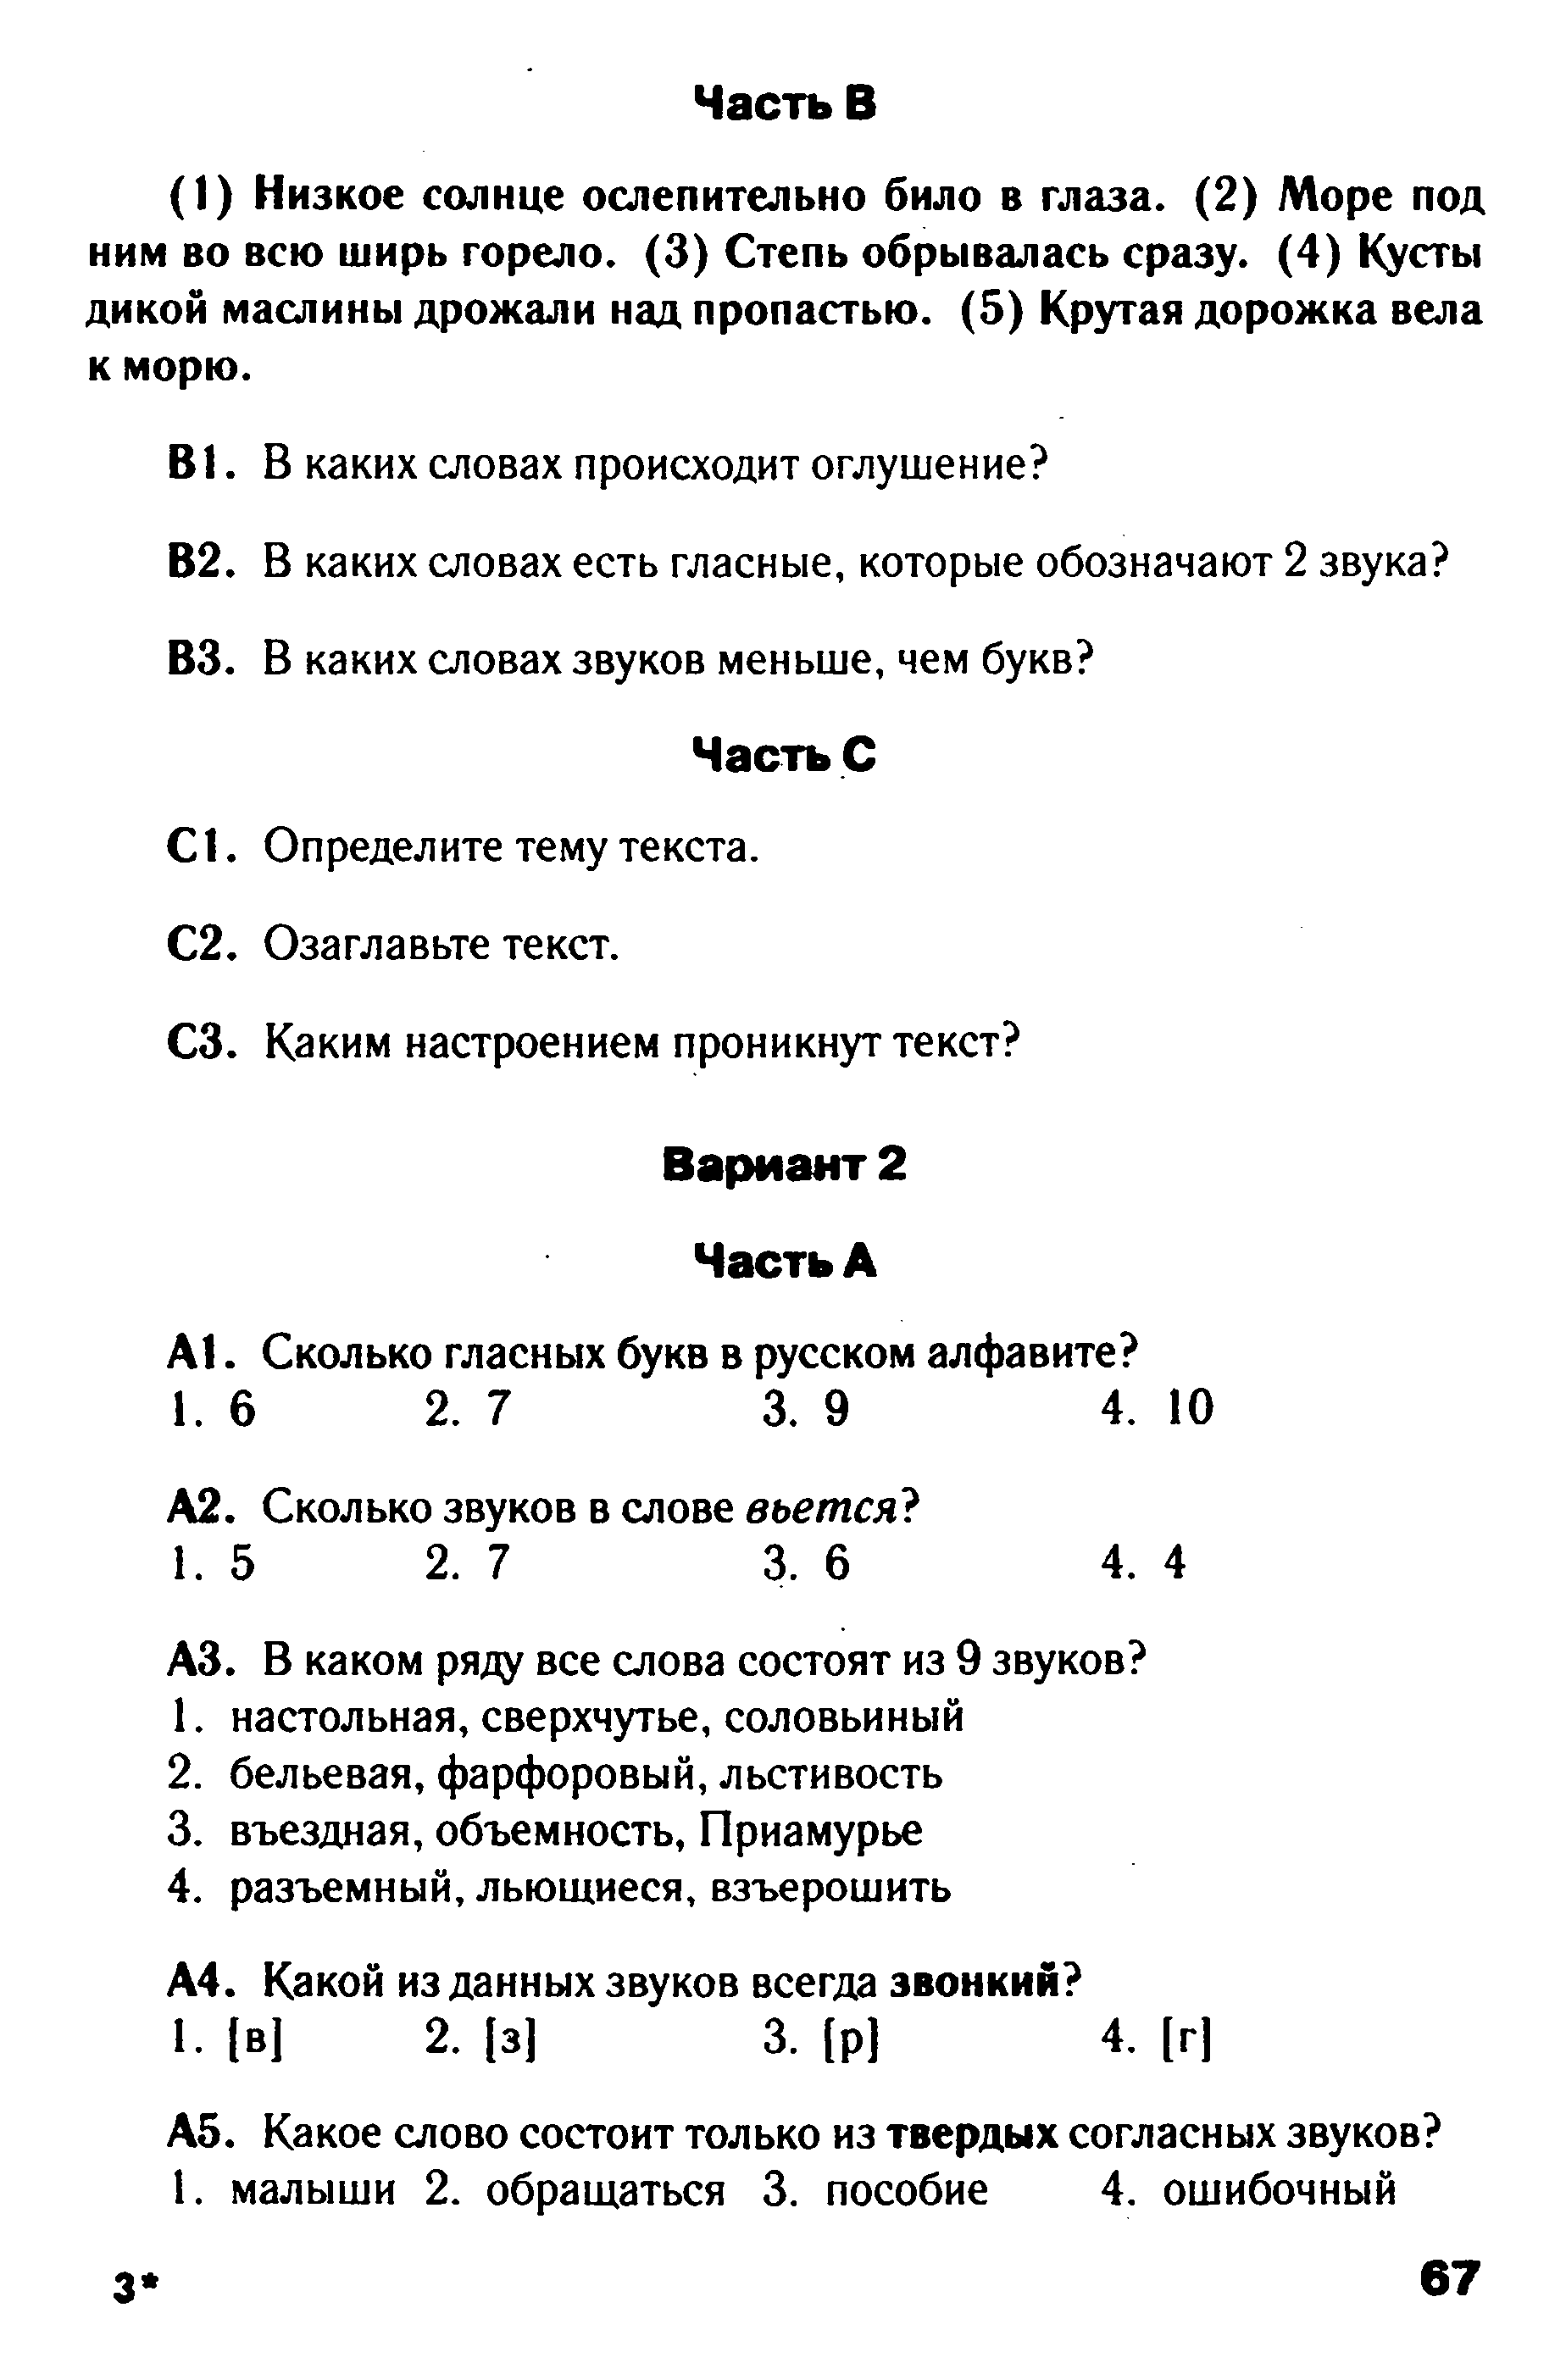 Тест по русскому языку в формате ГИА на тему Фонетика вариант 1